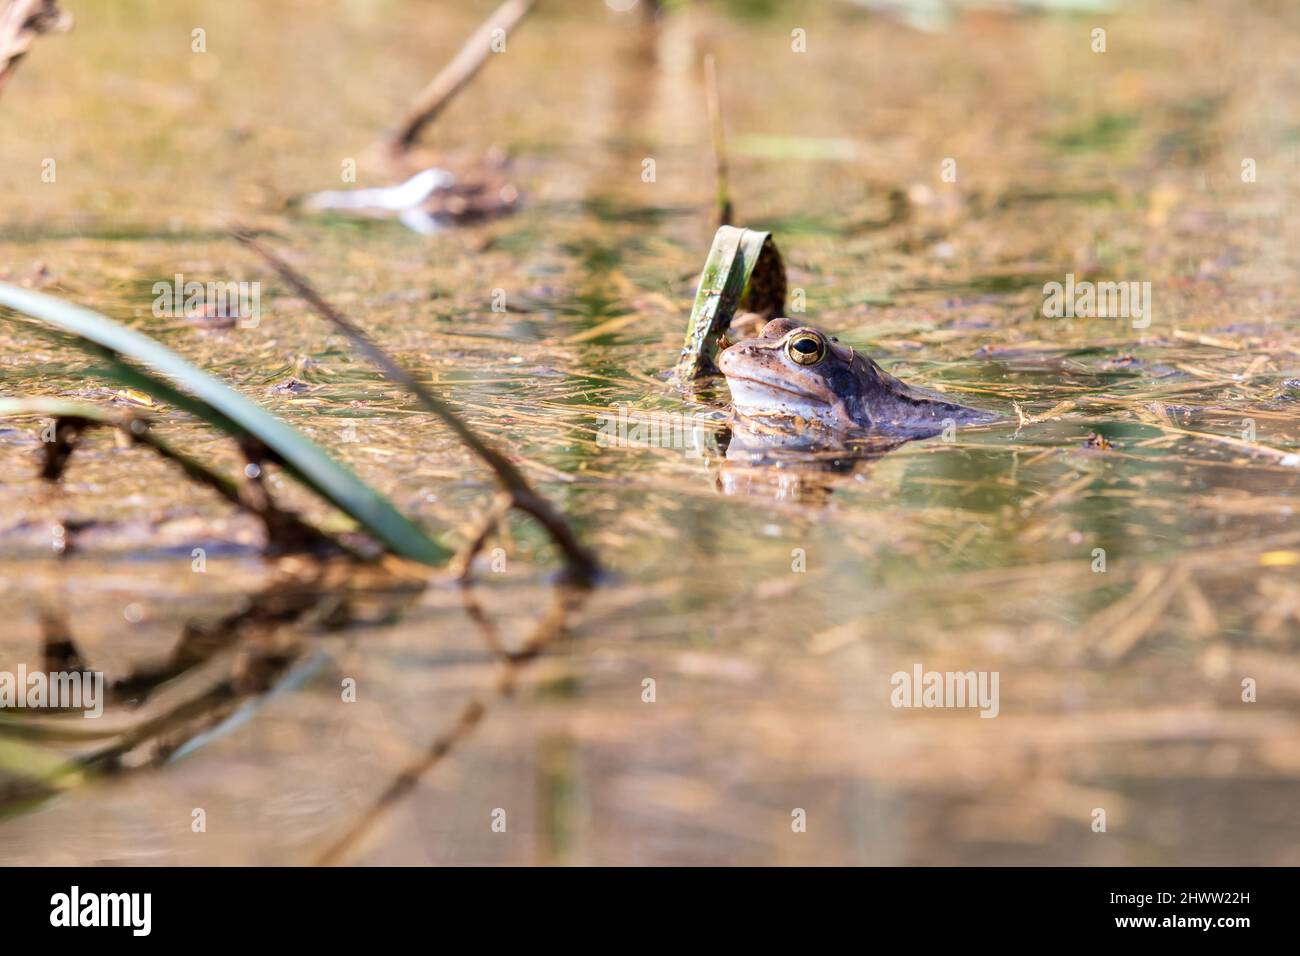 Blauer Frosch - Frosch Arvalis auf der Oberfläche eines Sumpfes. Foto der wilden Natur Stockfoto